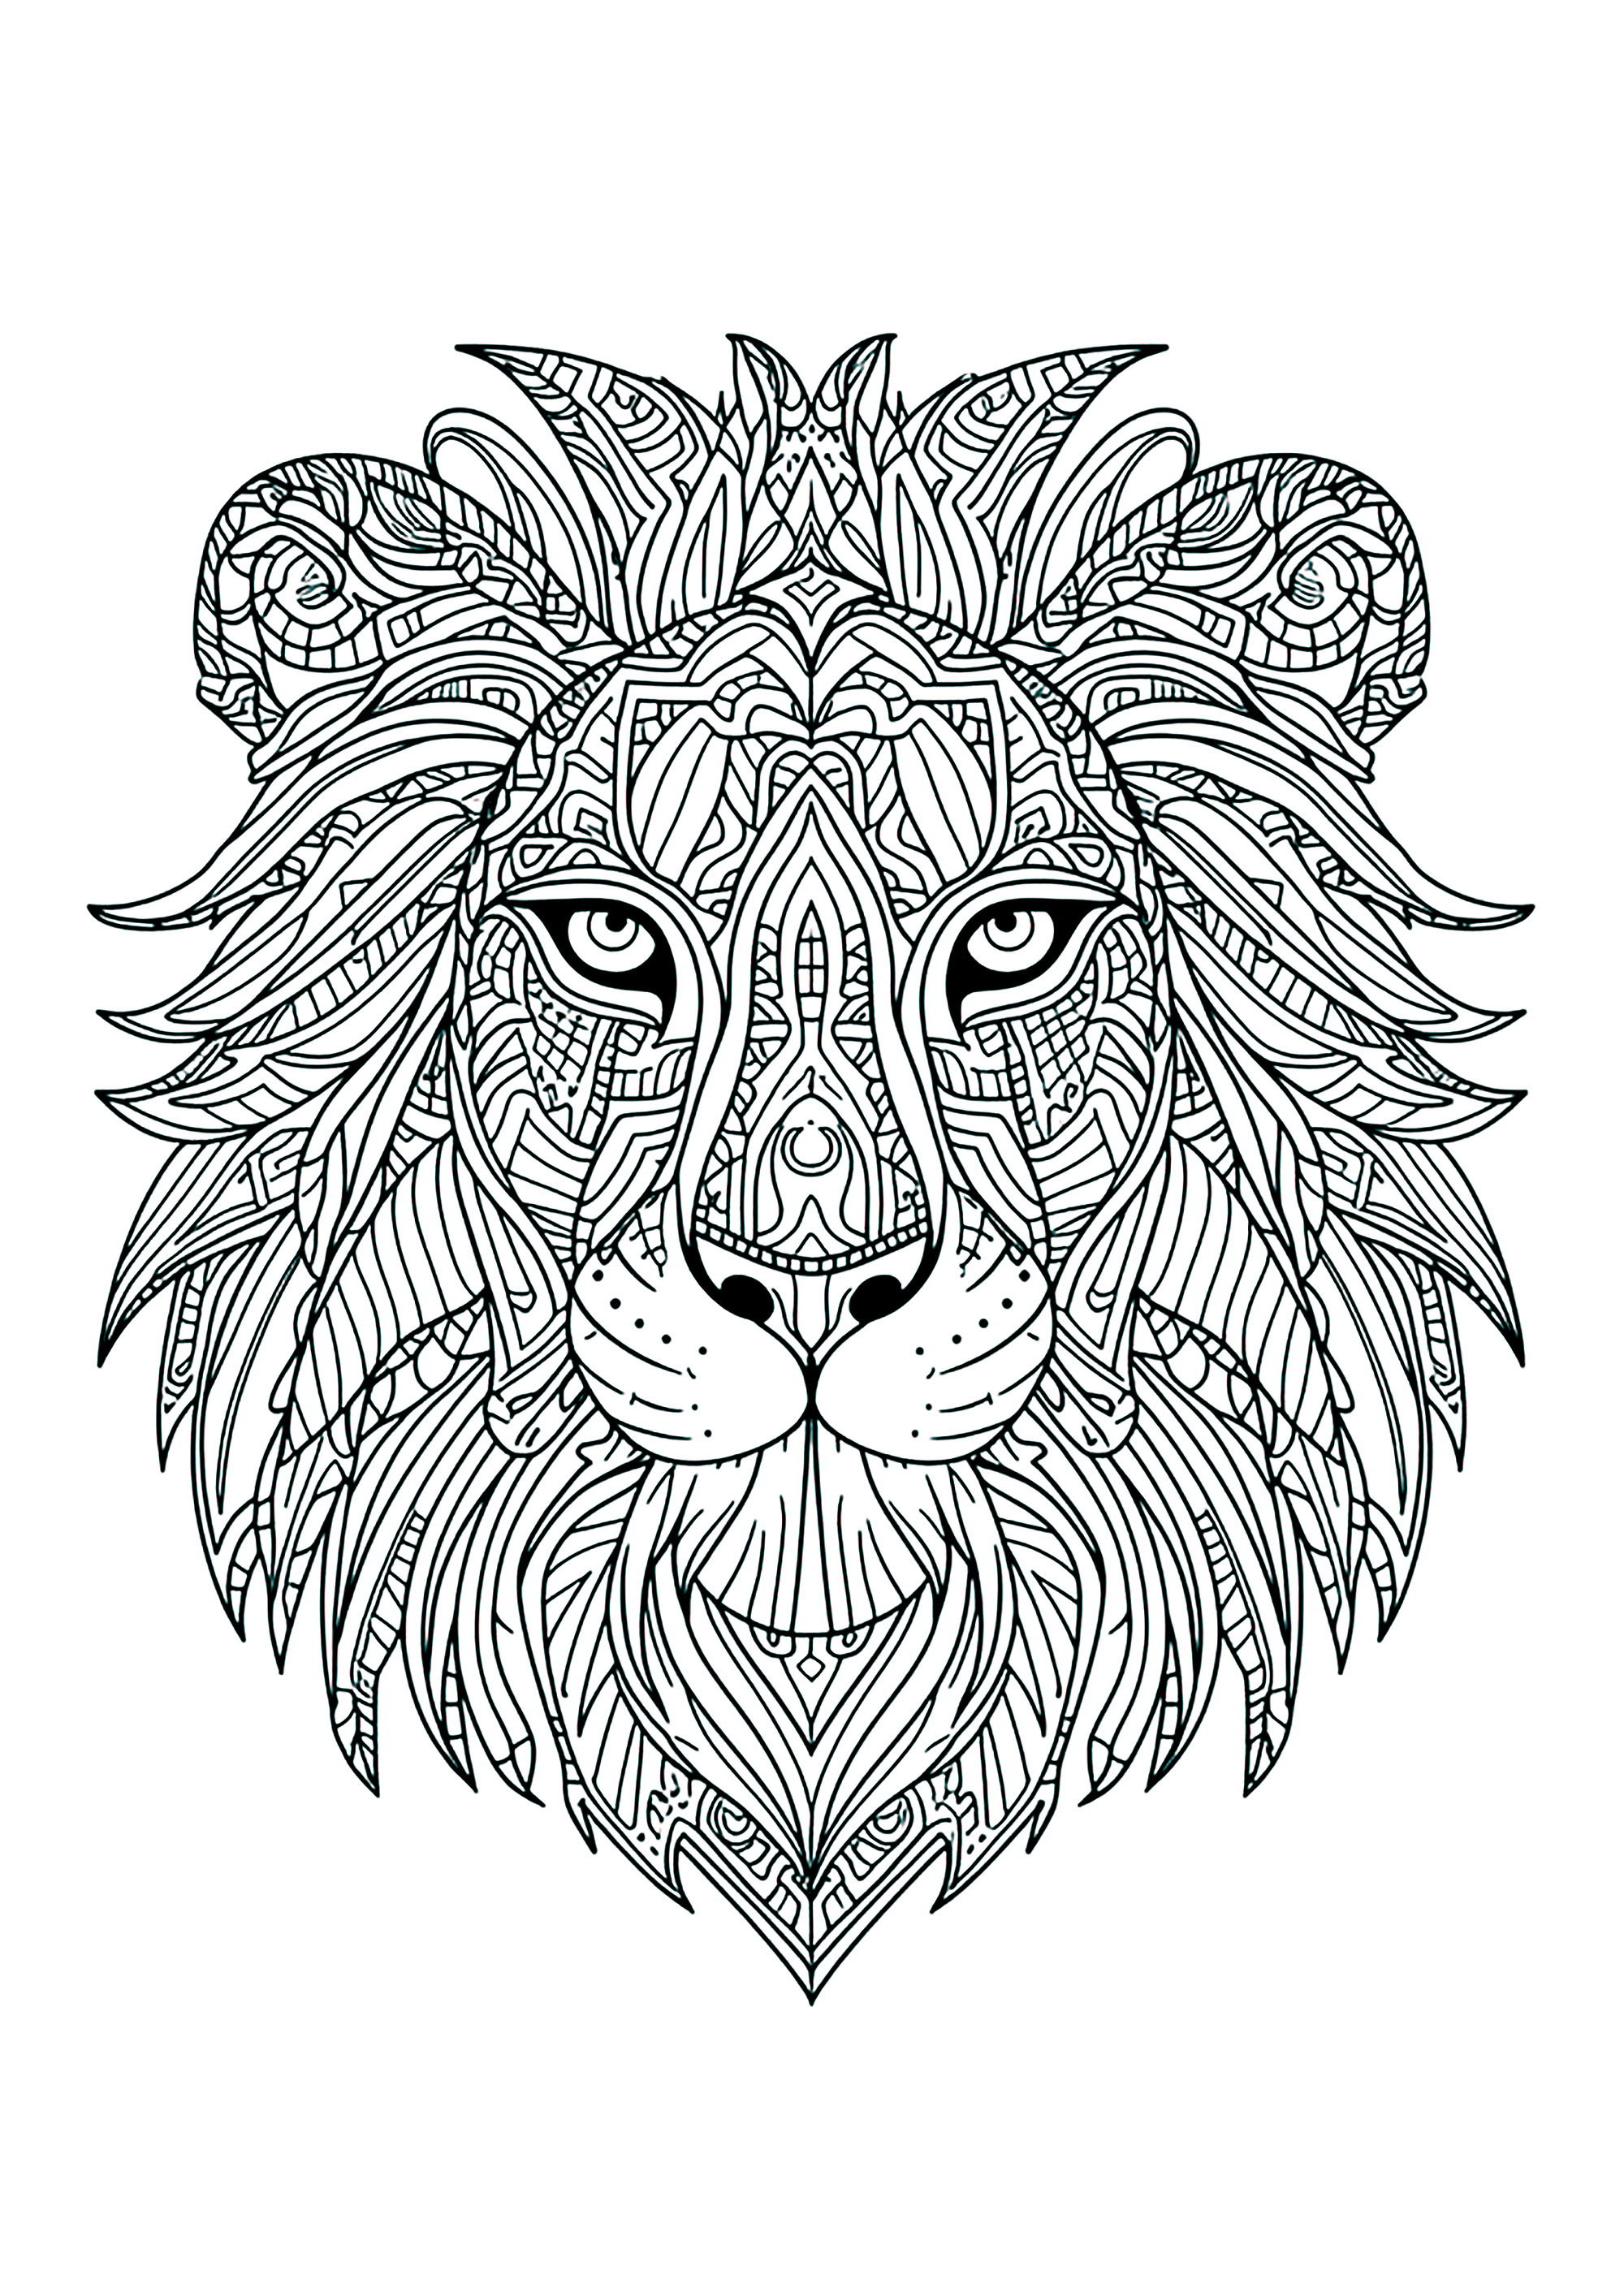 Löwenkopf mit vielen verschlungenen Motiven